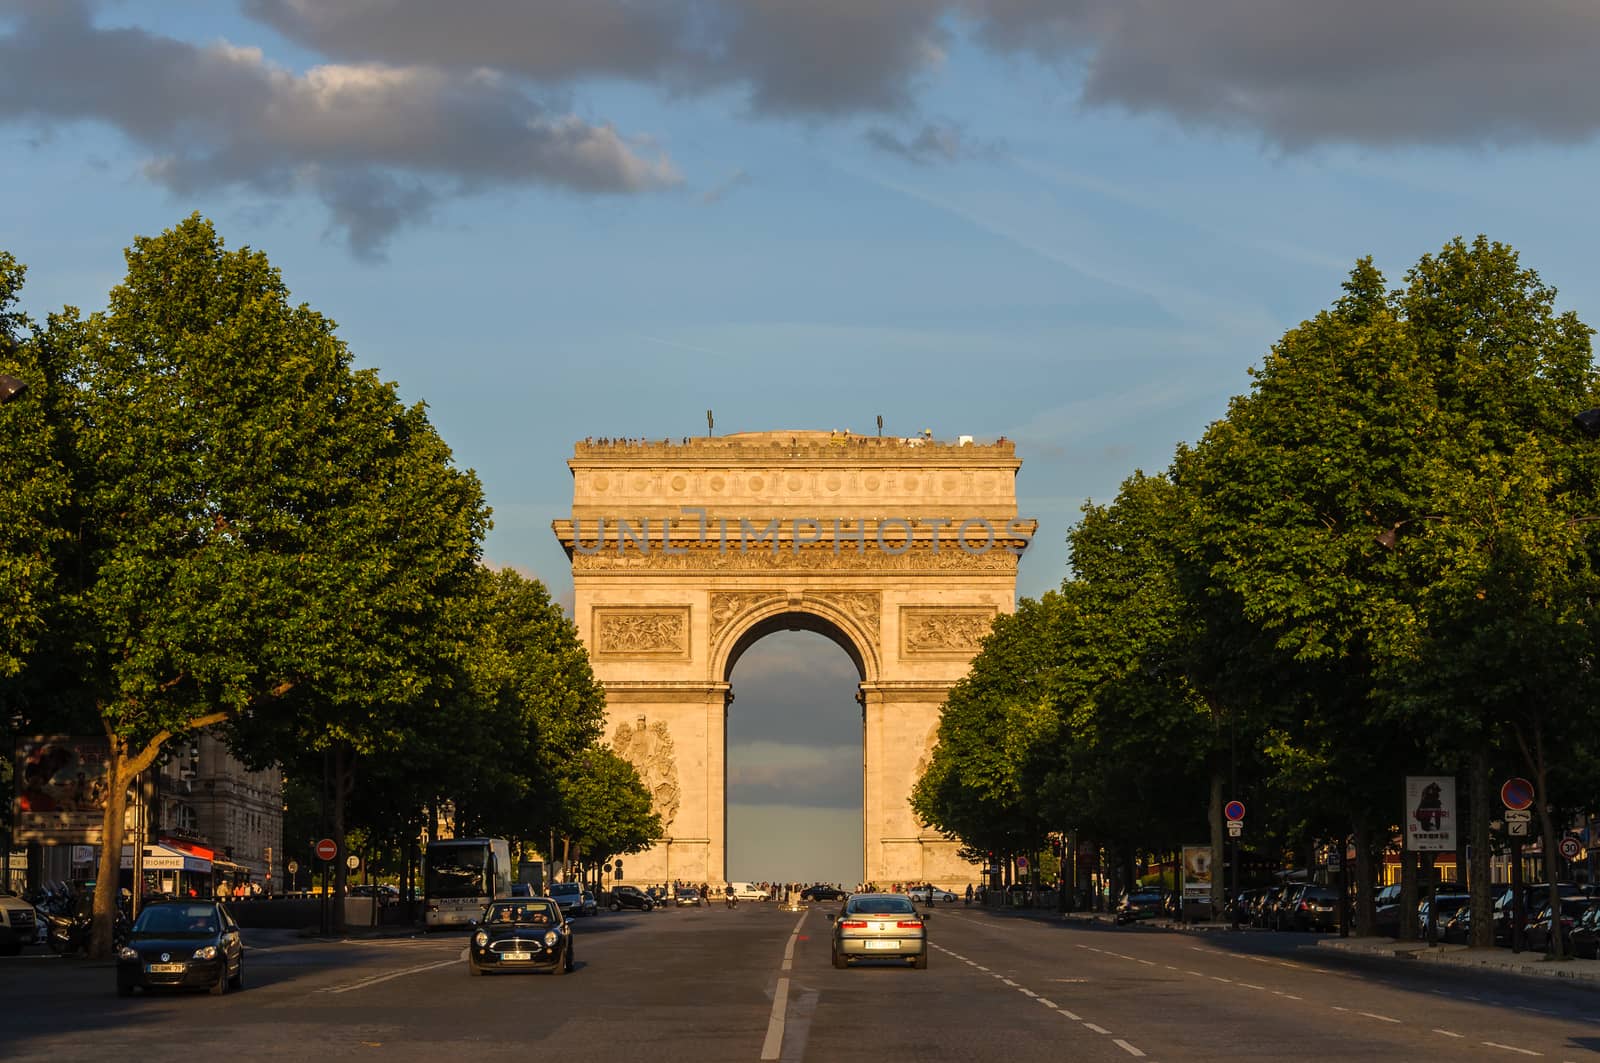 PARIS, FRANCE - CIRCA JUNE 2012: The Arc de Triomphe at sunset as seen from Avenue de la Grande Armée.